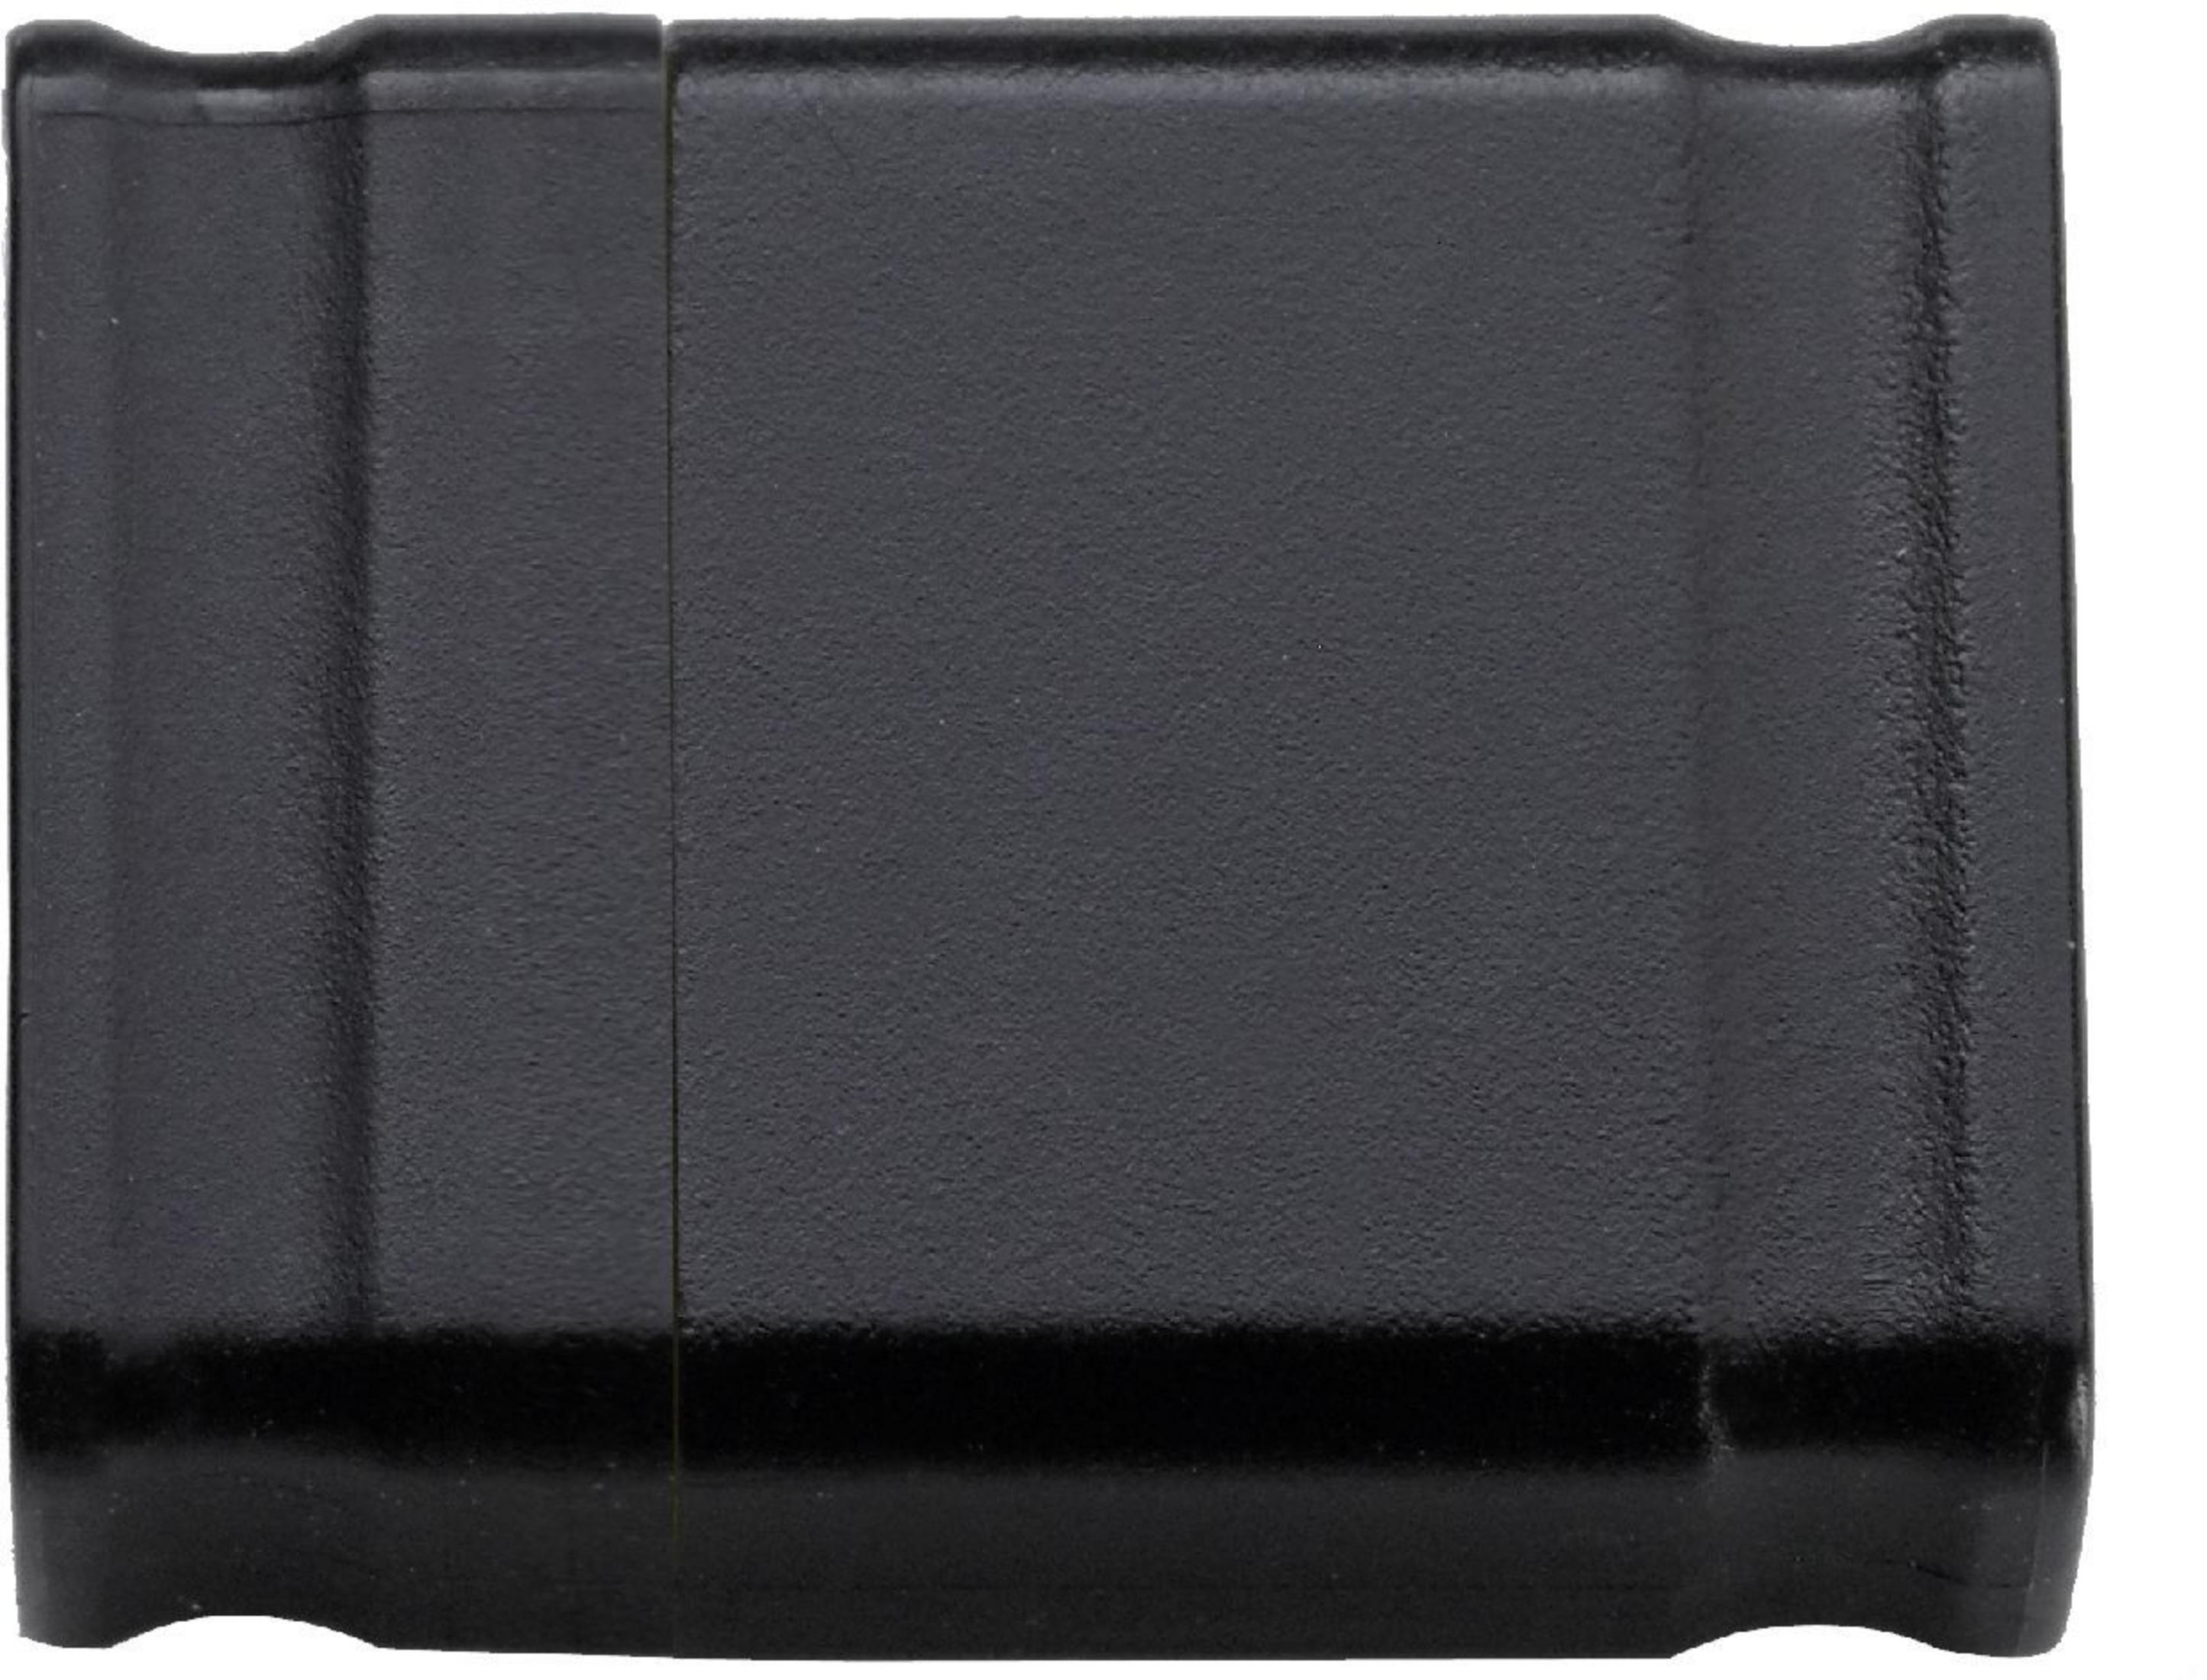 4 3500450 4GB (Schwarz, GB) MICRO-LINE INTENSO USB-Stick